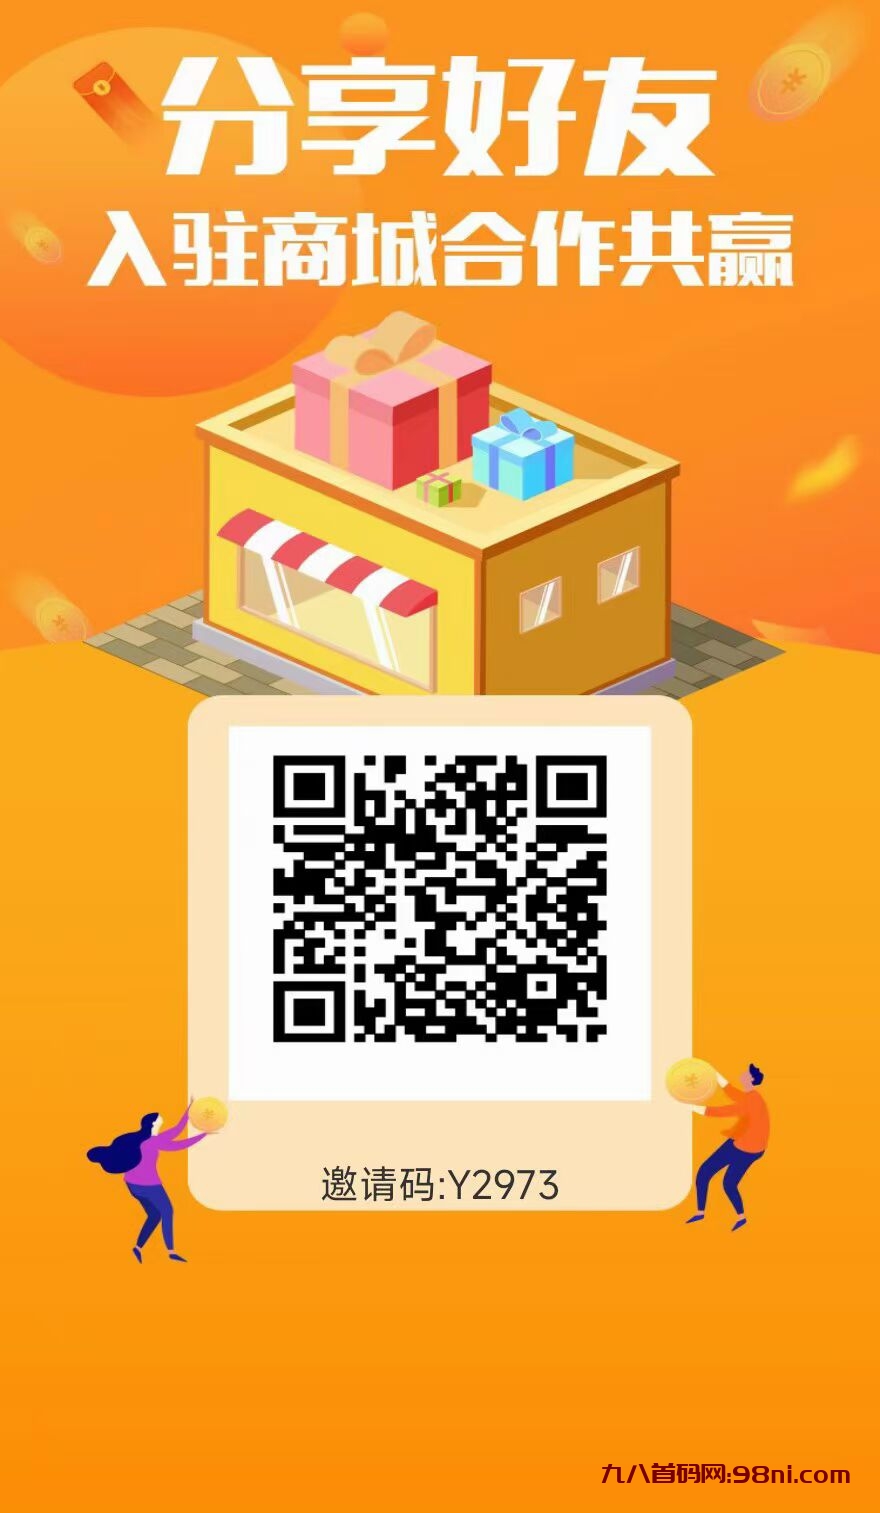 东淘严选首码官方邀请码Y2973-首码网-网上创业赚钱首码项目发布推广平台